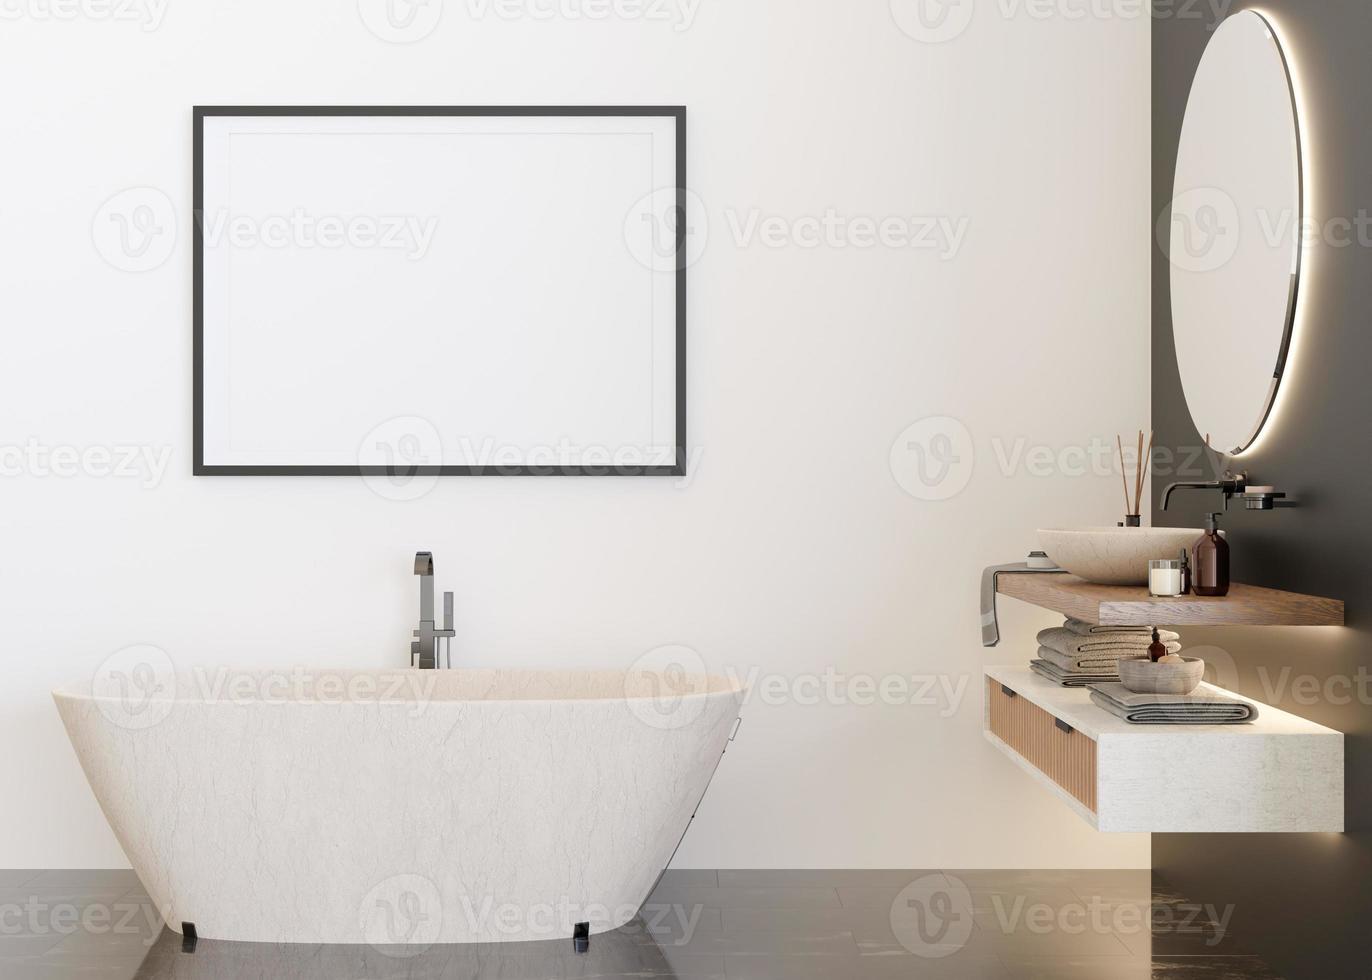 moldura horizontal vazia na parede branca no banheiro moderno e luxuoso. mock up interior em estilo contemporâneo. livre, copie o espaço para sua foto, pôster, arte. banheira, lavatório. renderização 3D. foto